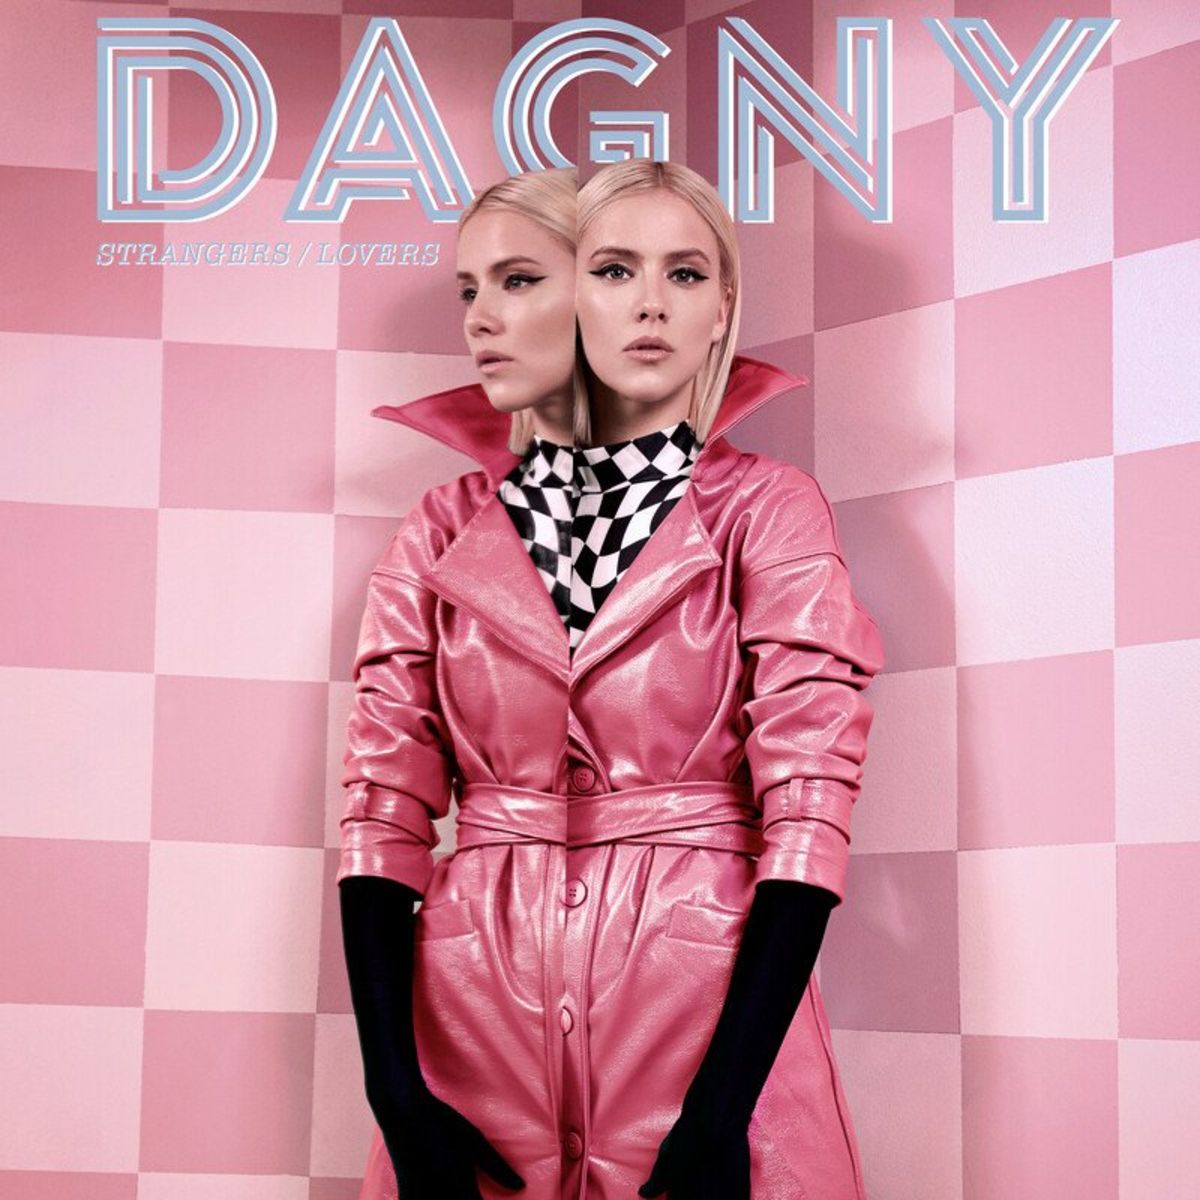 Dagny - Strangers / Lovers (2020) [FLAC 24bit/44,1kHz]